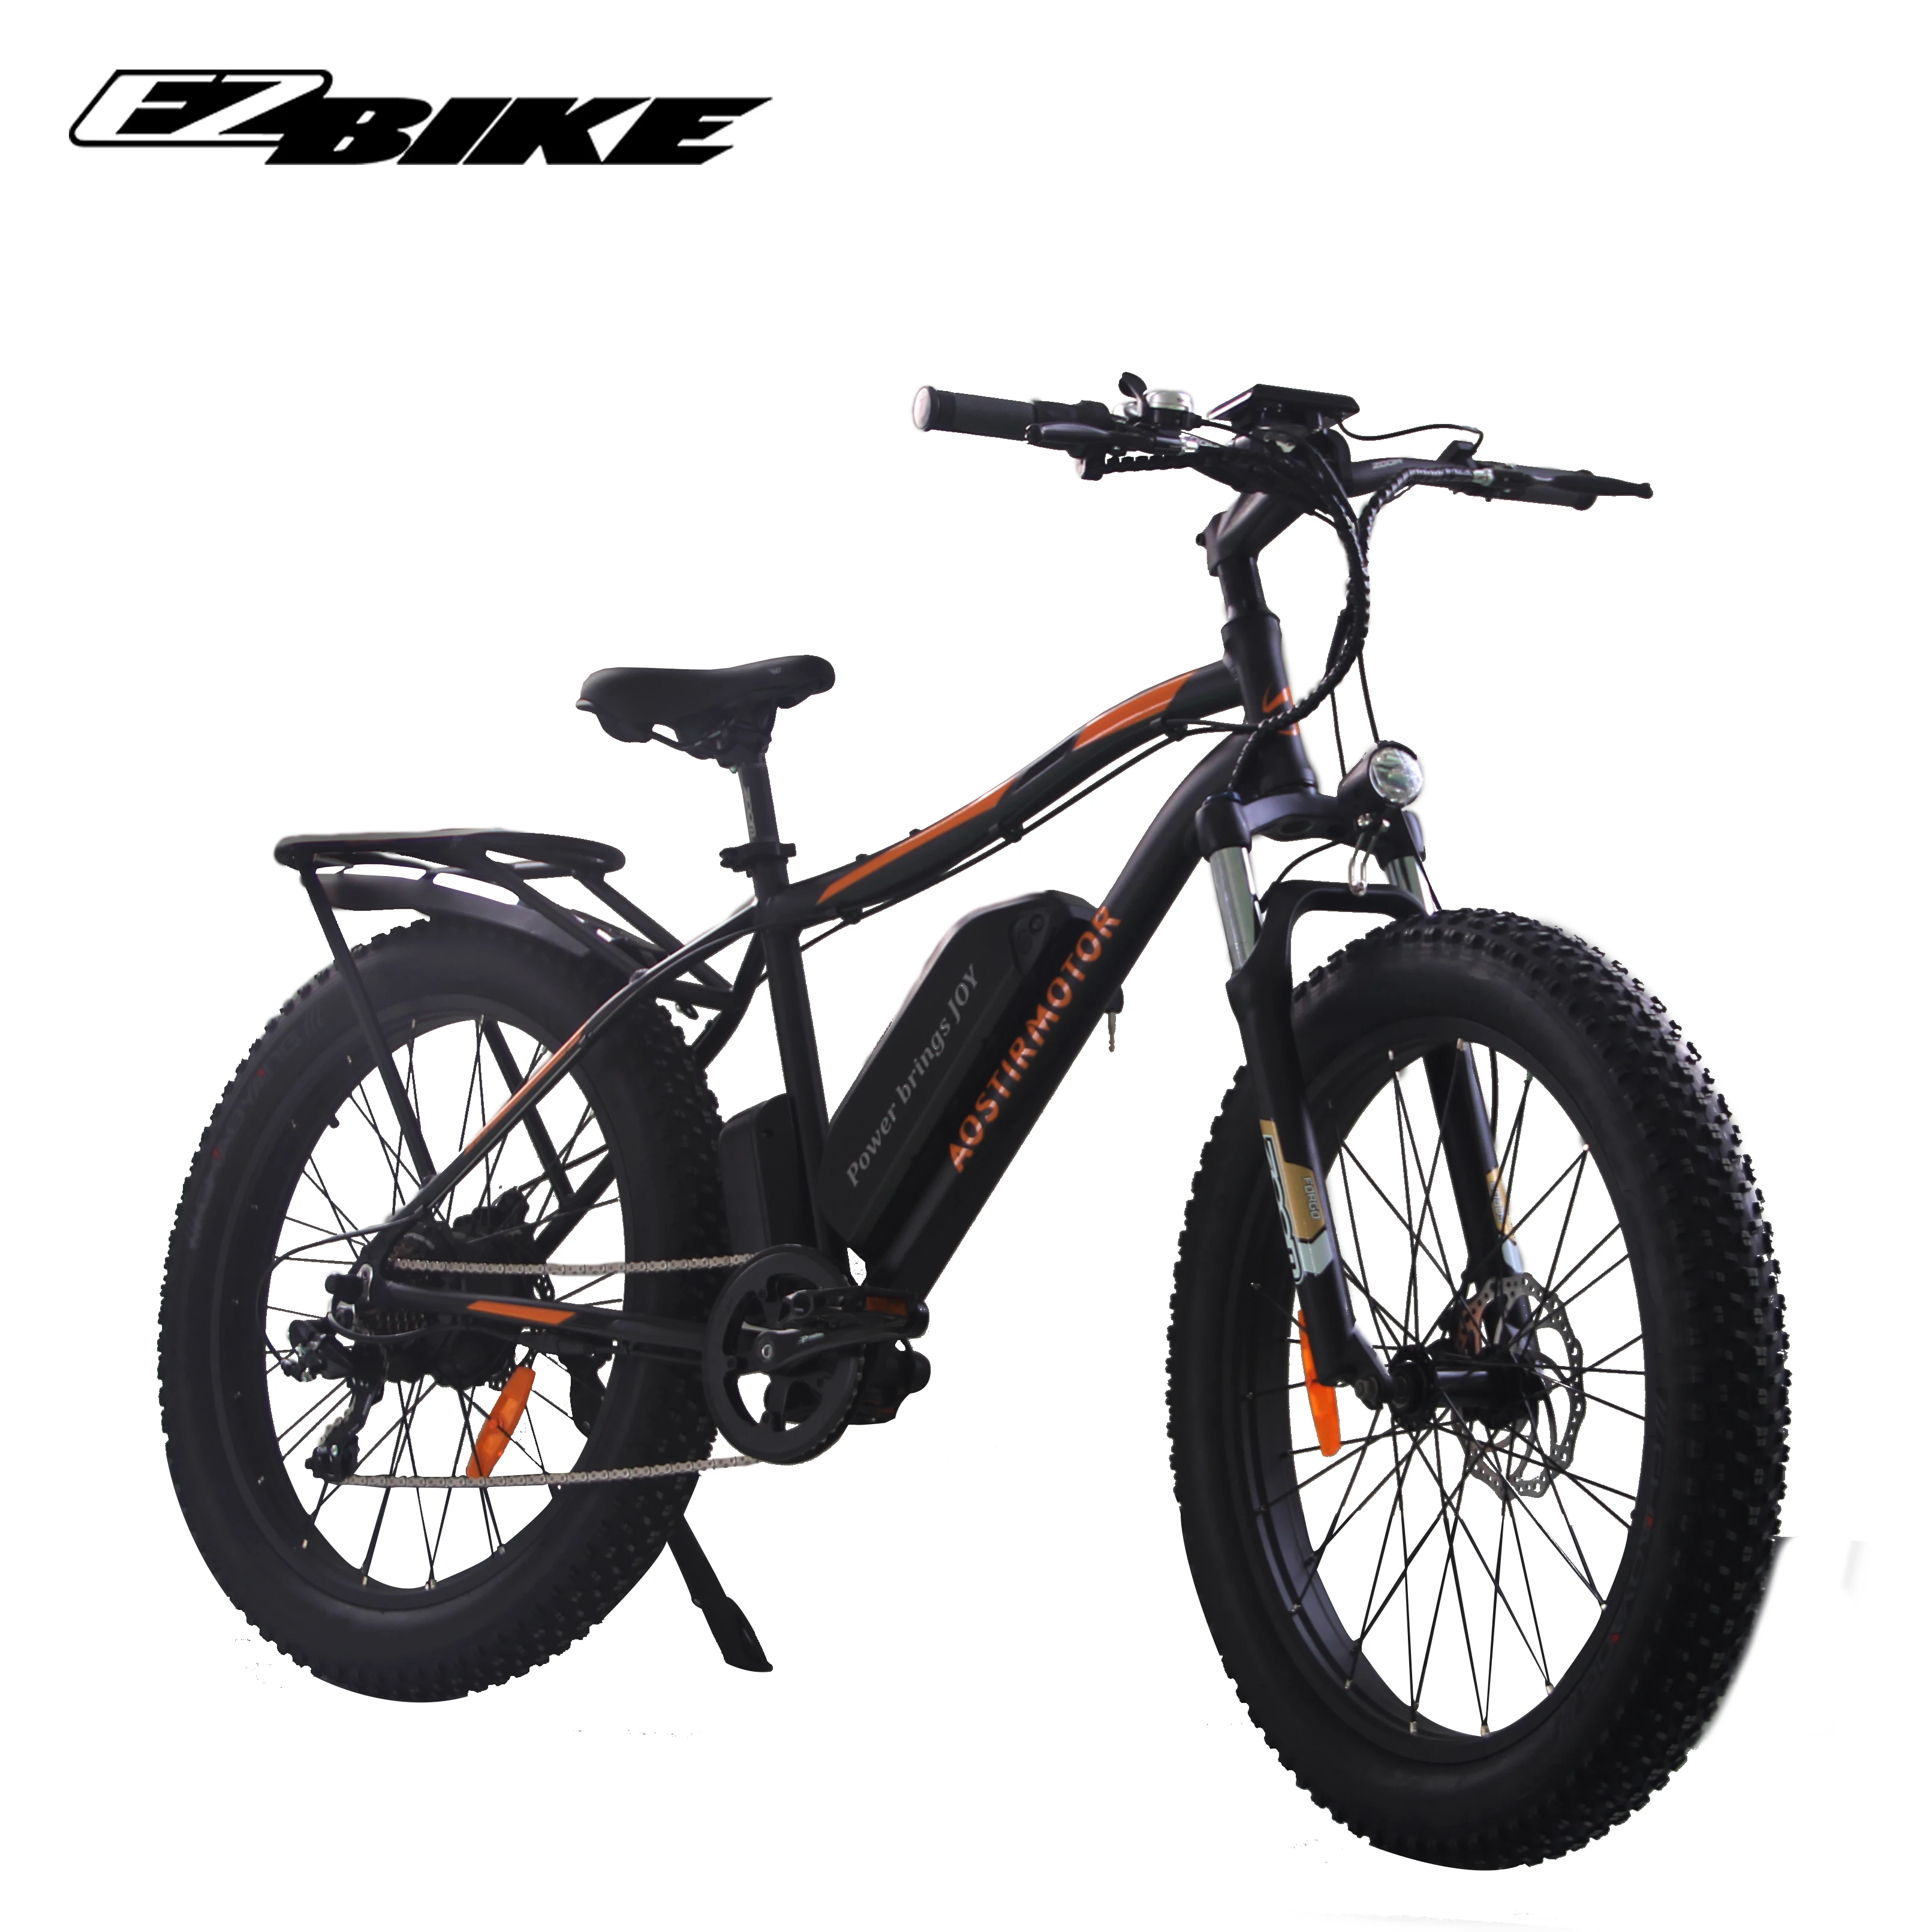 Cheap practical all terrain 30mph 48v 750w mtb electric bike ebike with rear rack